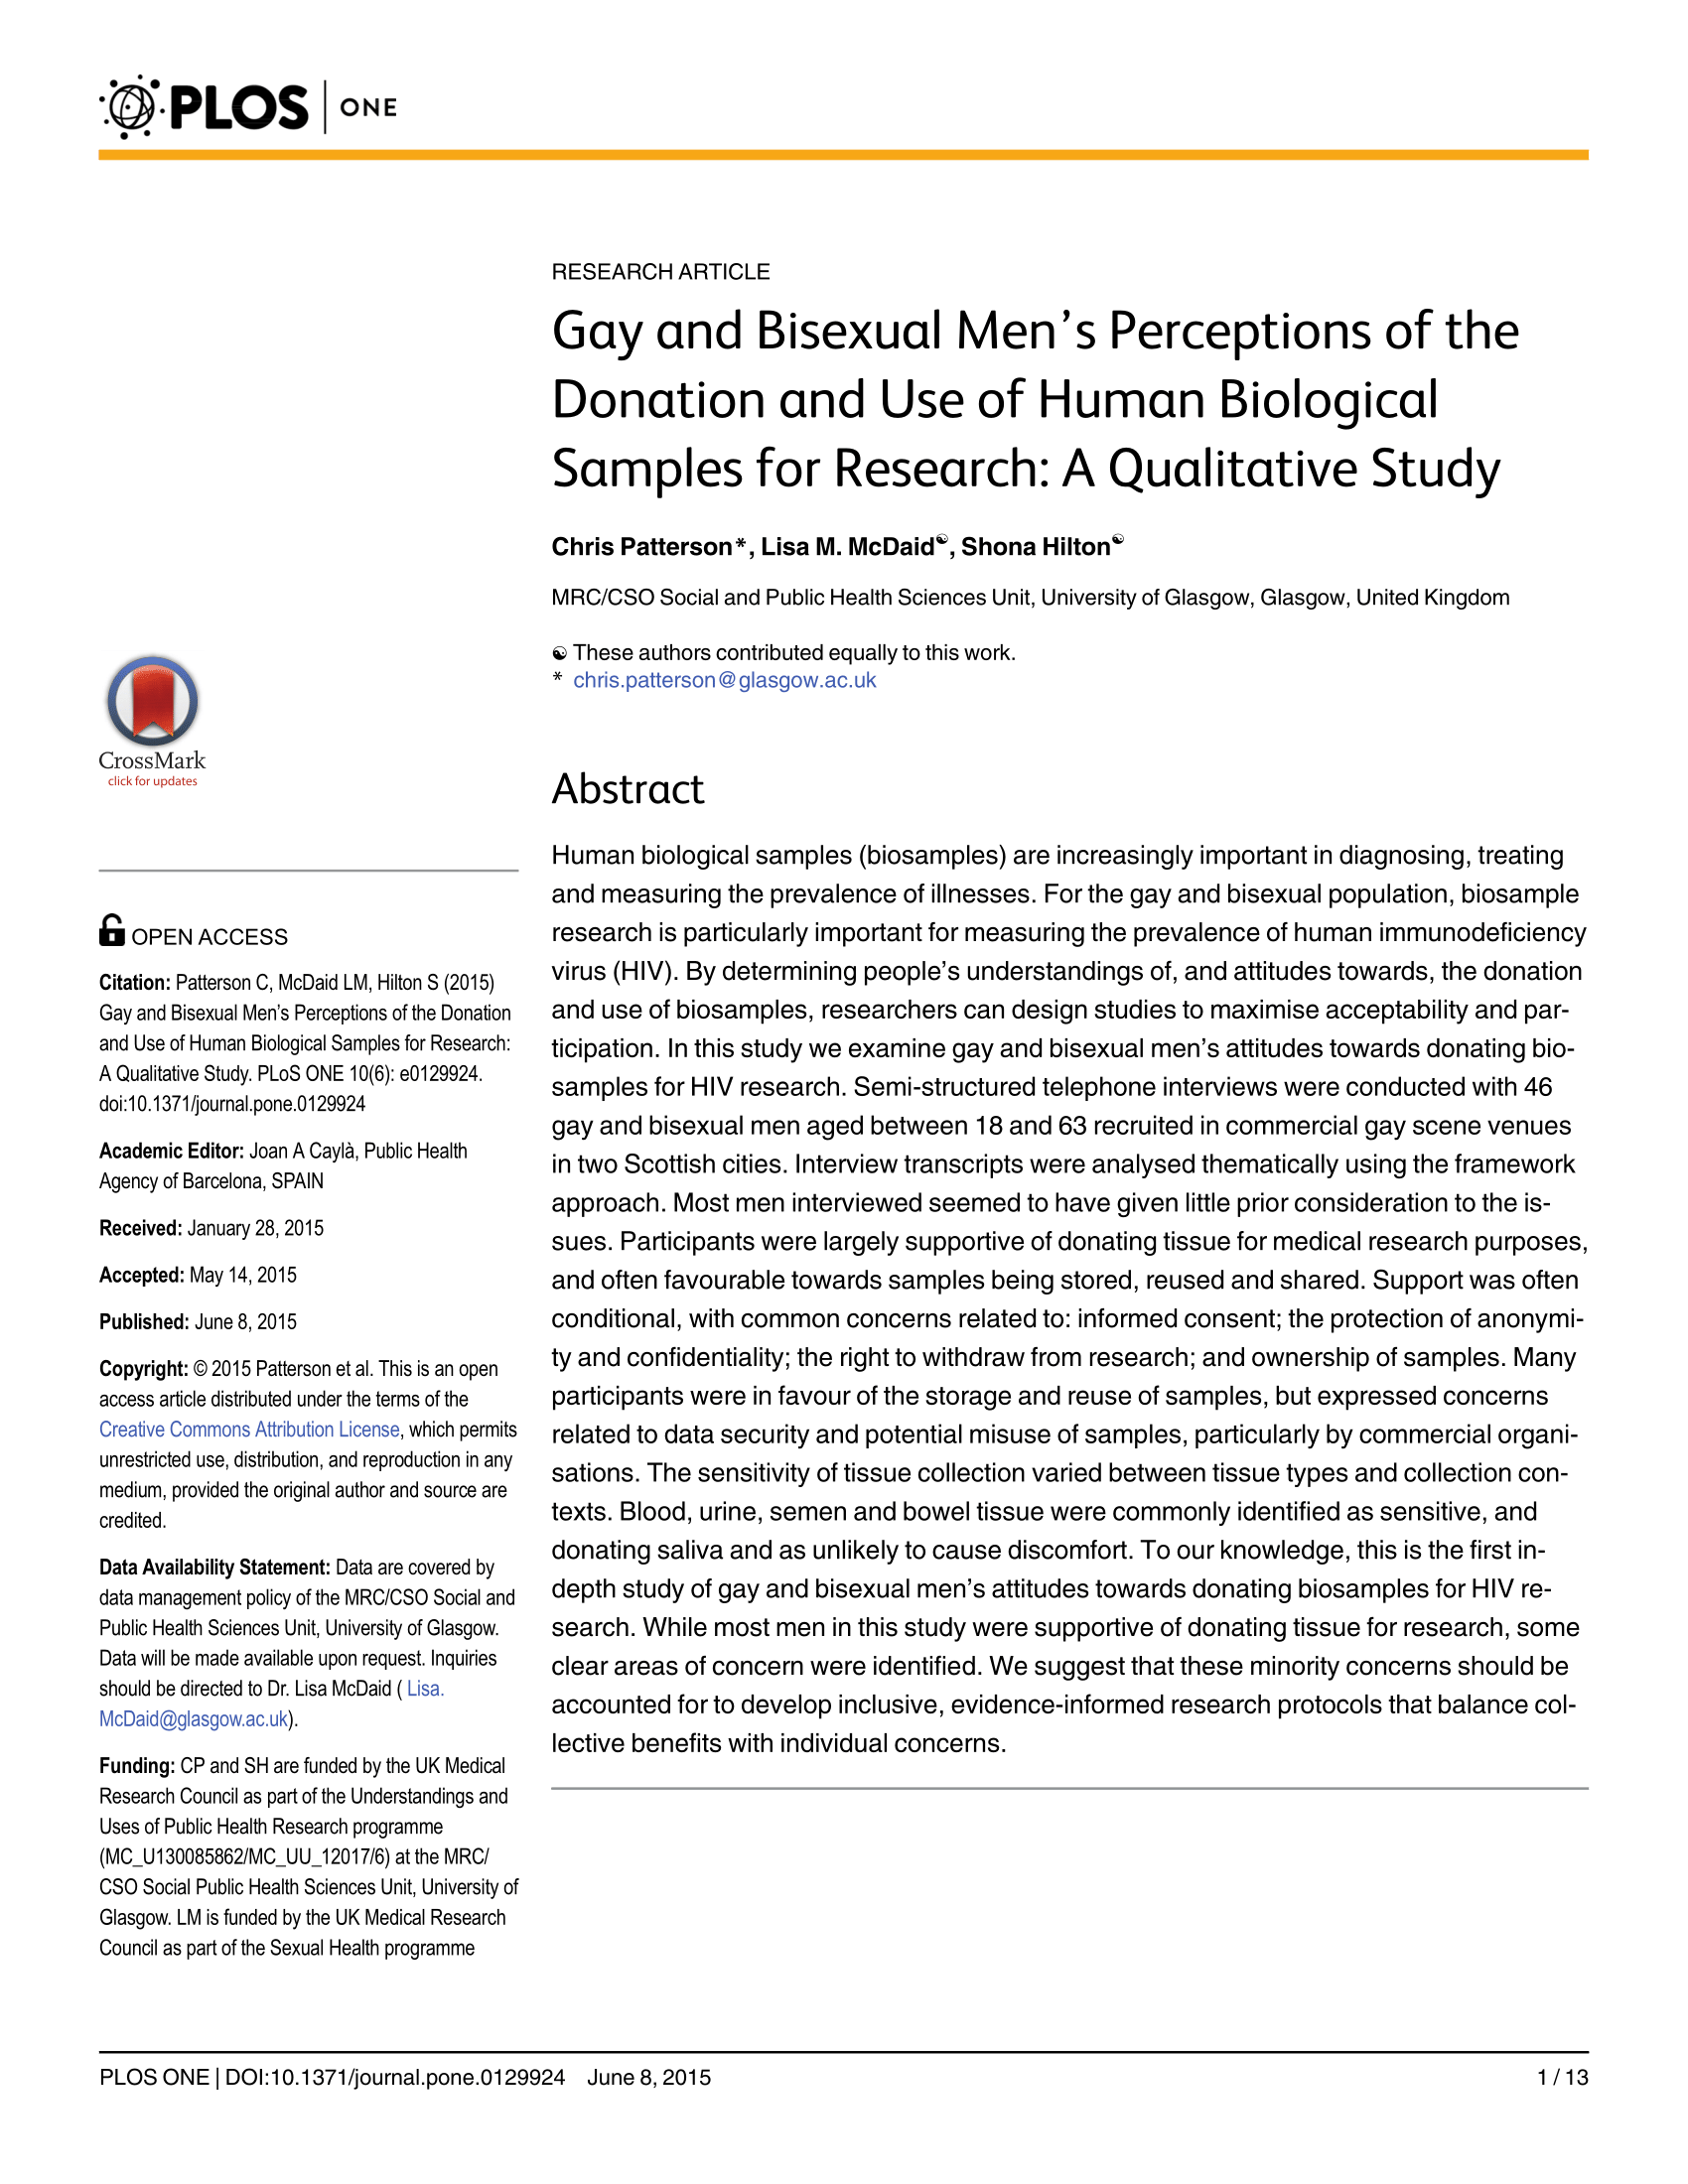 a paper in research